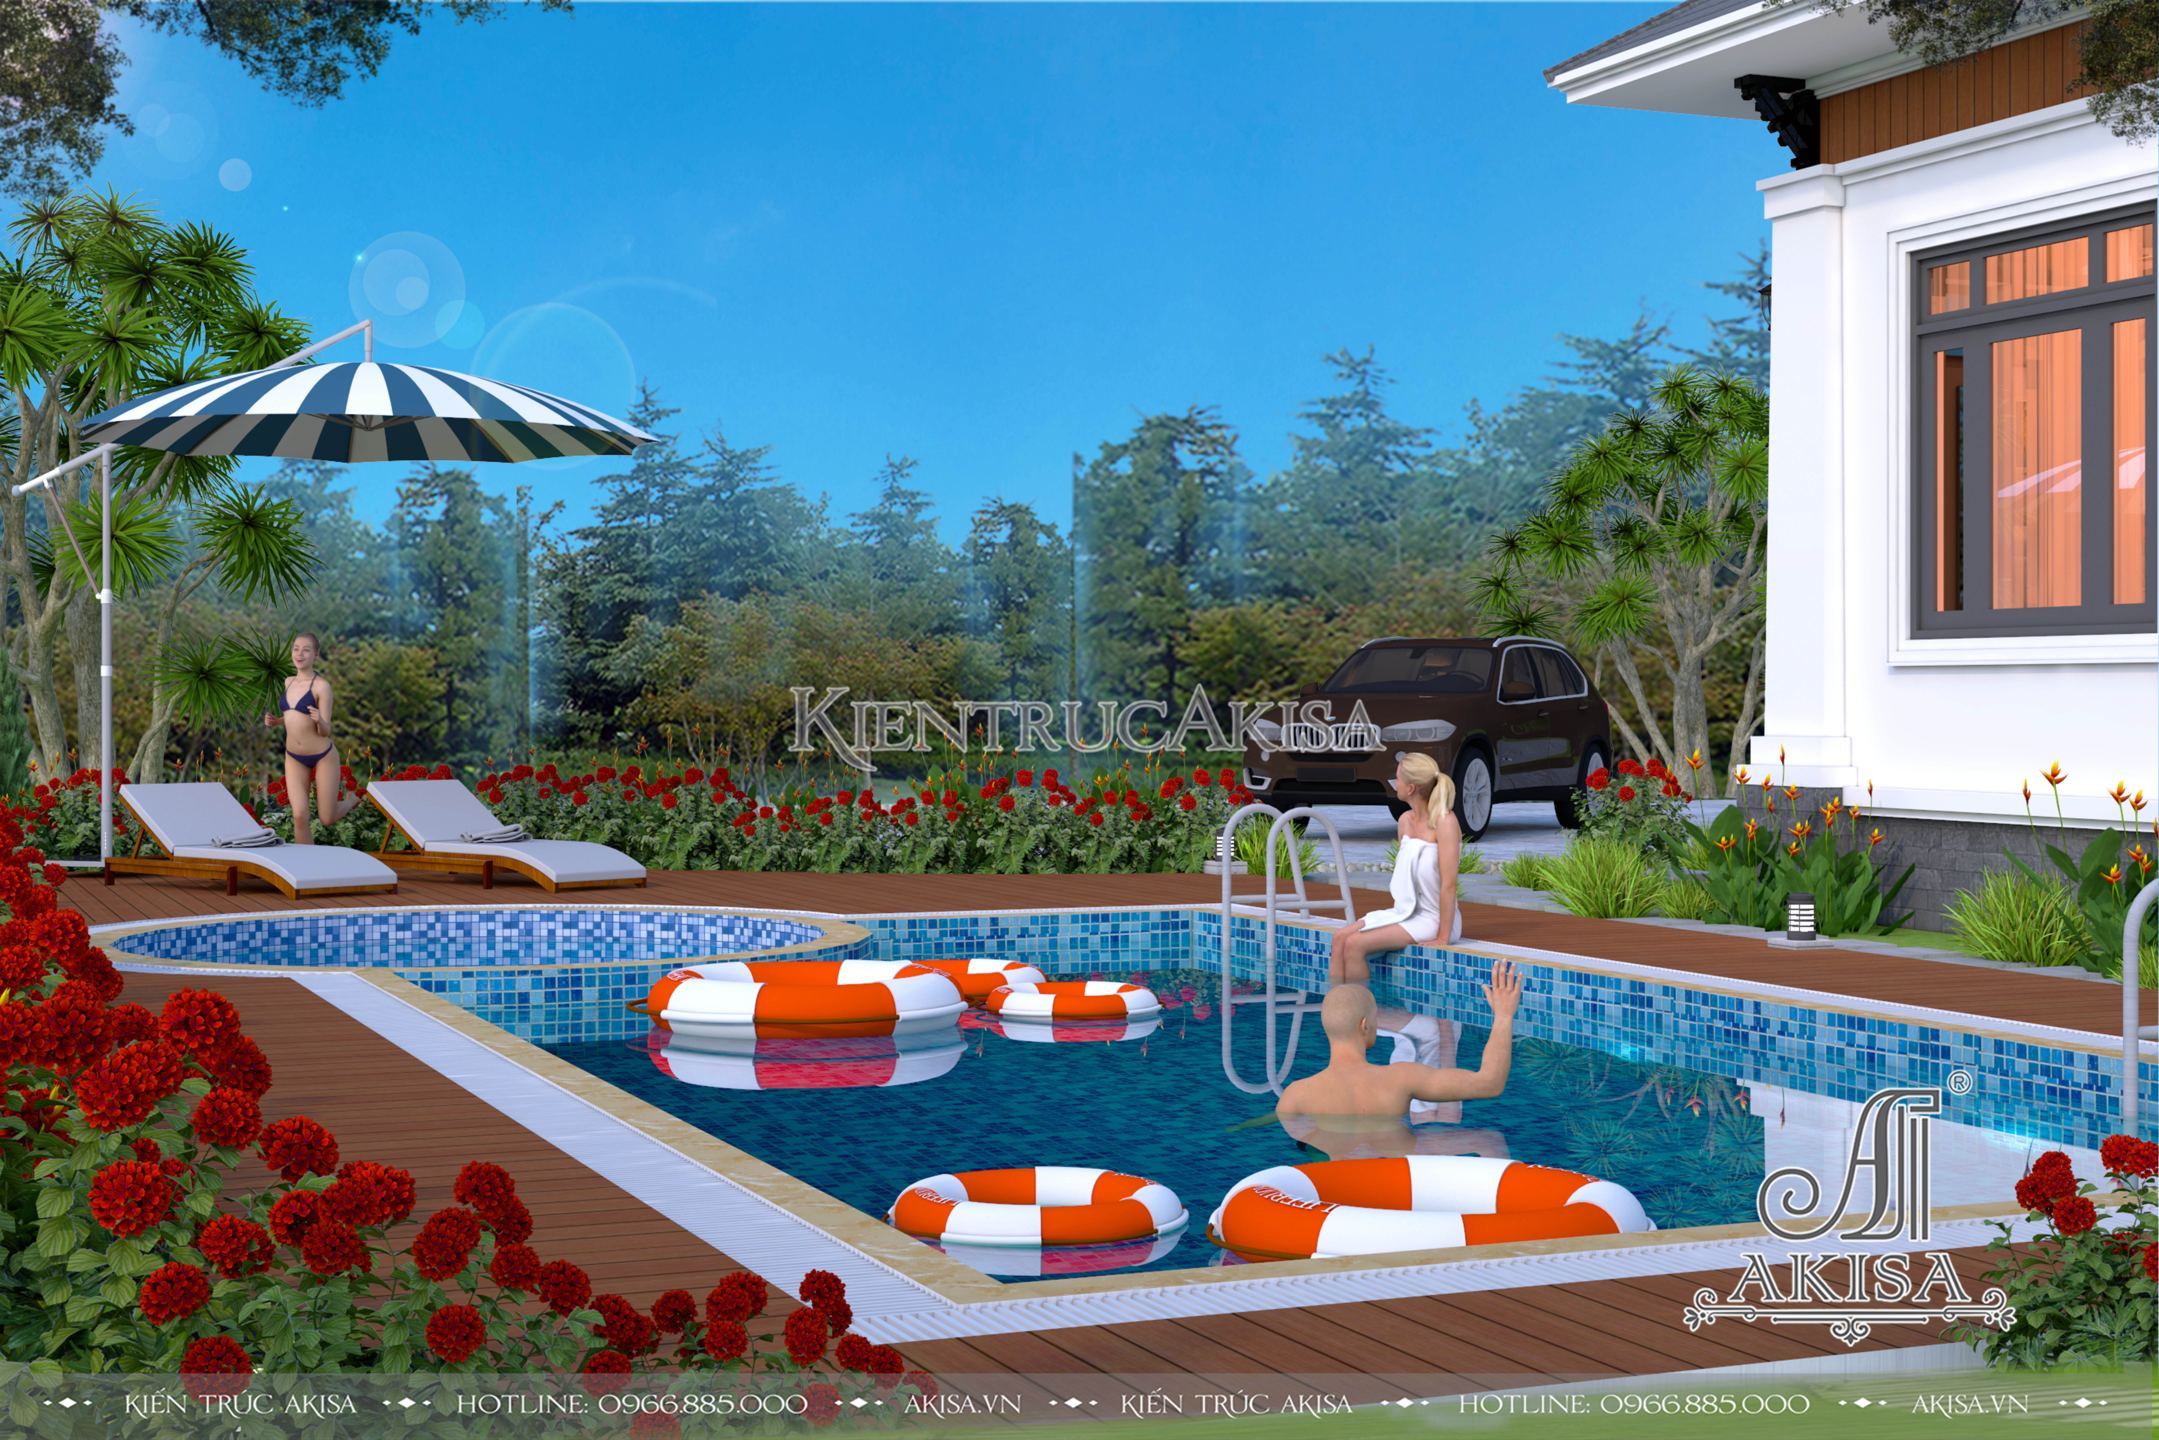 Thiết kế sân vườn kèm bể bơi đem đến không gian thư giãn, giải trí tối ưu cho cả gia đình